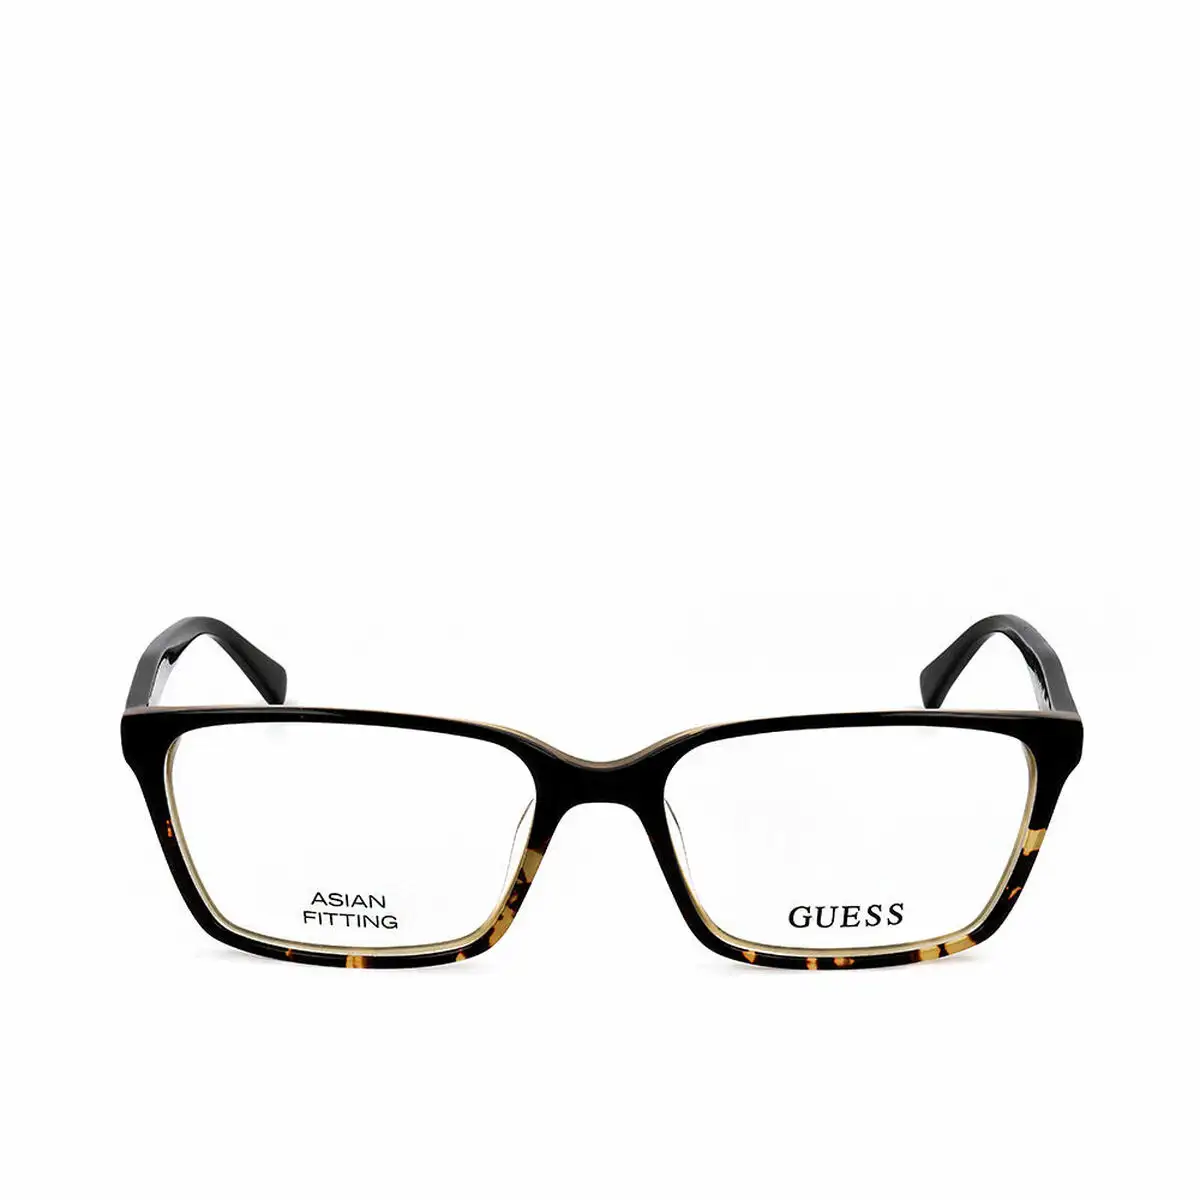 Monture de lunettes guess gu1898 f 005 o 55 mm_5752. Découvrez DIAYTAR SENEGAL - Là où le Choix Rencontre la Qualité. Parcourez notre gamme diversifiée et choisissez parmi des produits conçus pour exceller dans tous les aspects de votre vie.